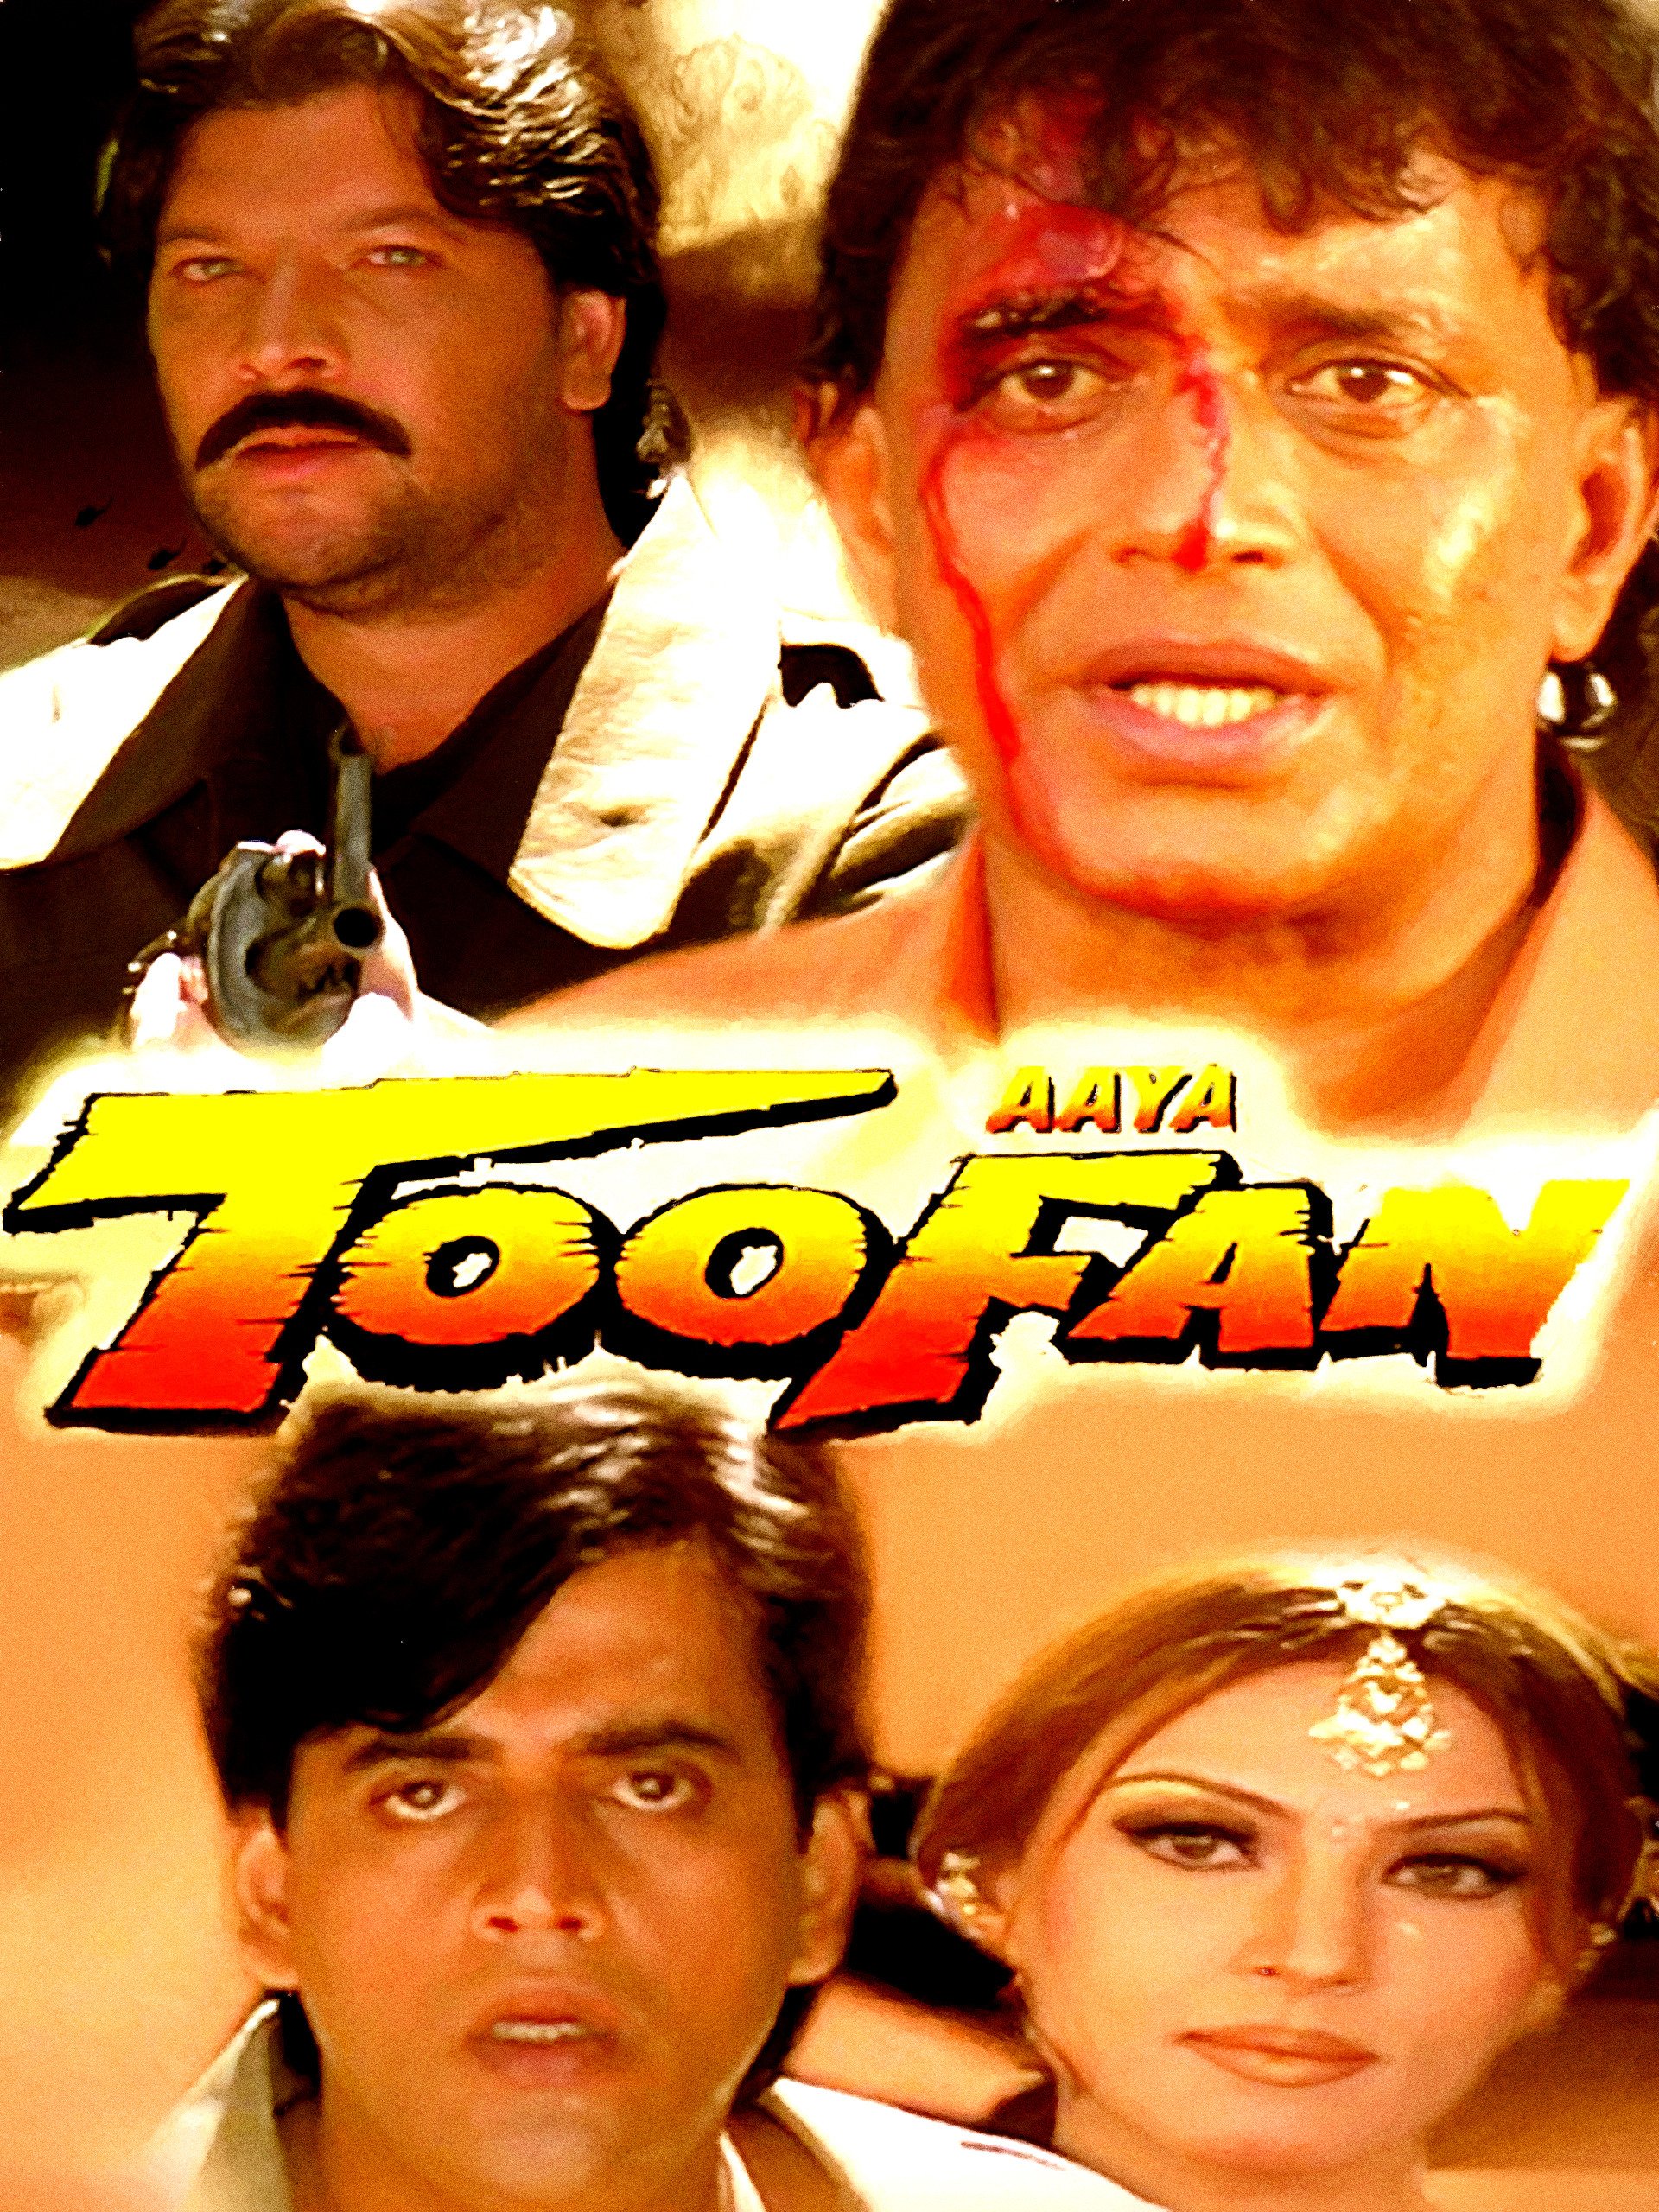 Aaya Toofan 1999 19019 Poster.jpg